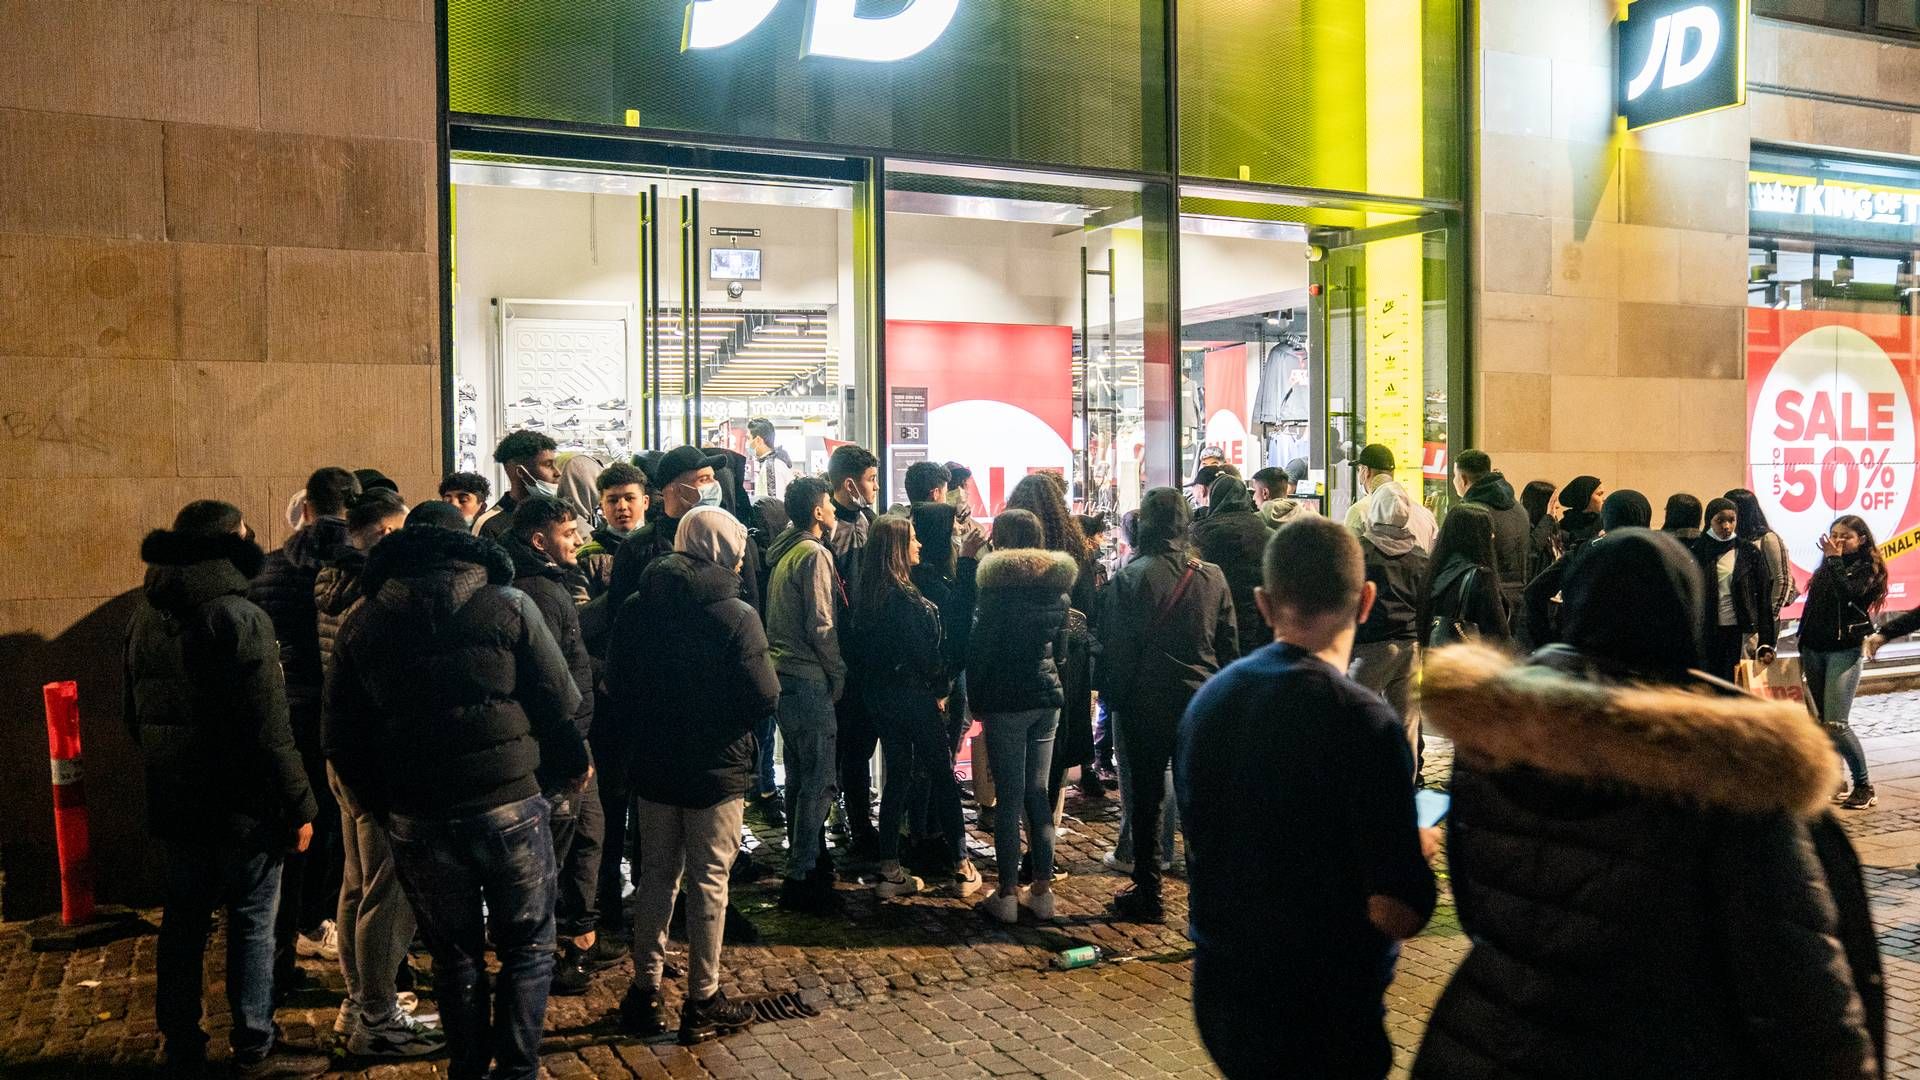 JD Sports har en flagskibsbutik på Strøget i København. Her var der lang kø til i marts 2021 i forbindelse med genåbningen af butikken, der havde været tvangslukket som følge af coronapandemien. | Foto: Rasmus Flindt Pedersen